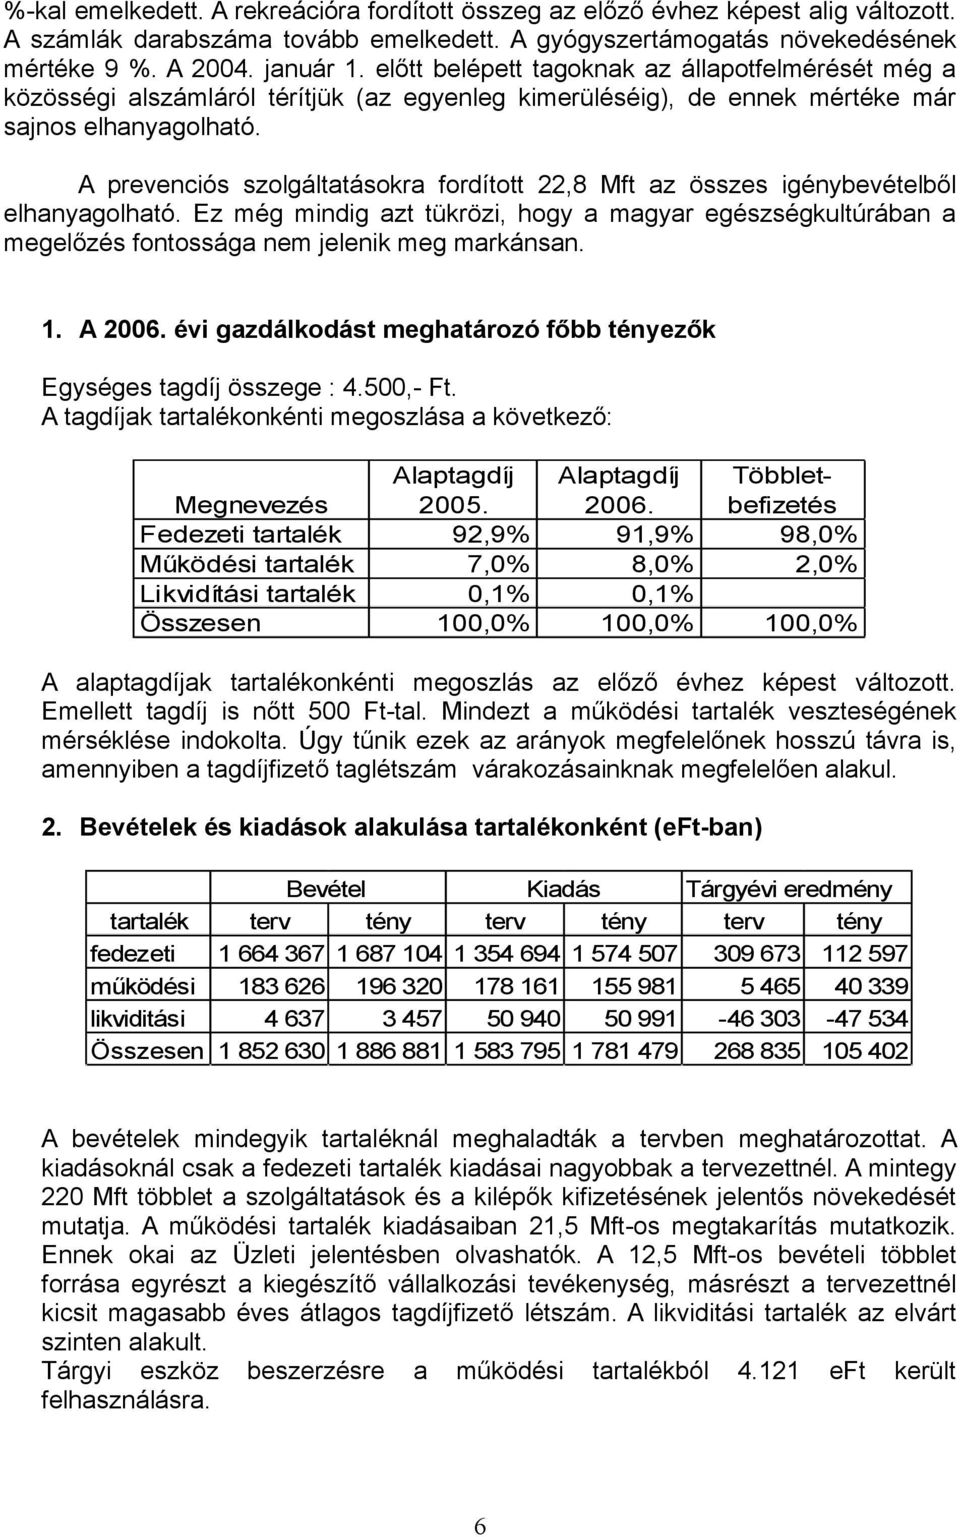 A prevenciós szolgáltatásokra fordított 22,8 Mft az összes igénybevételből elhanyagolható. Ez még mindig azt tükrözi, hogy a magyar egészségkultúrában a megelőzés fontossága nem jelenik meg markánsan.